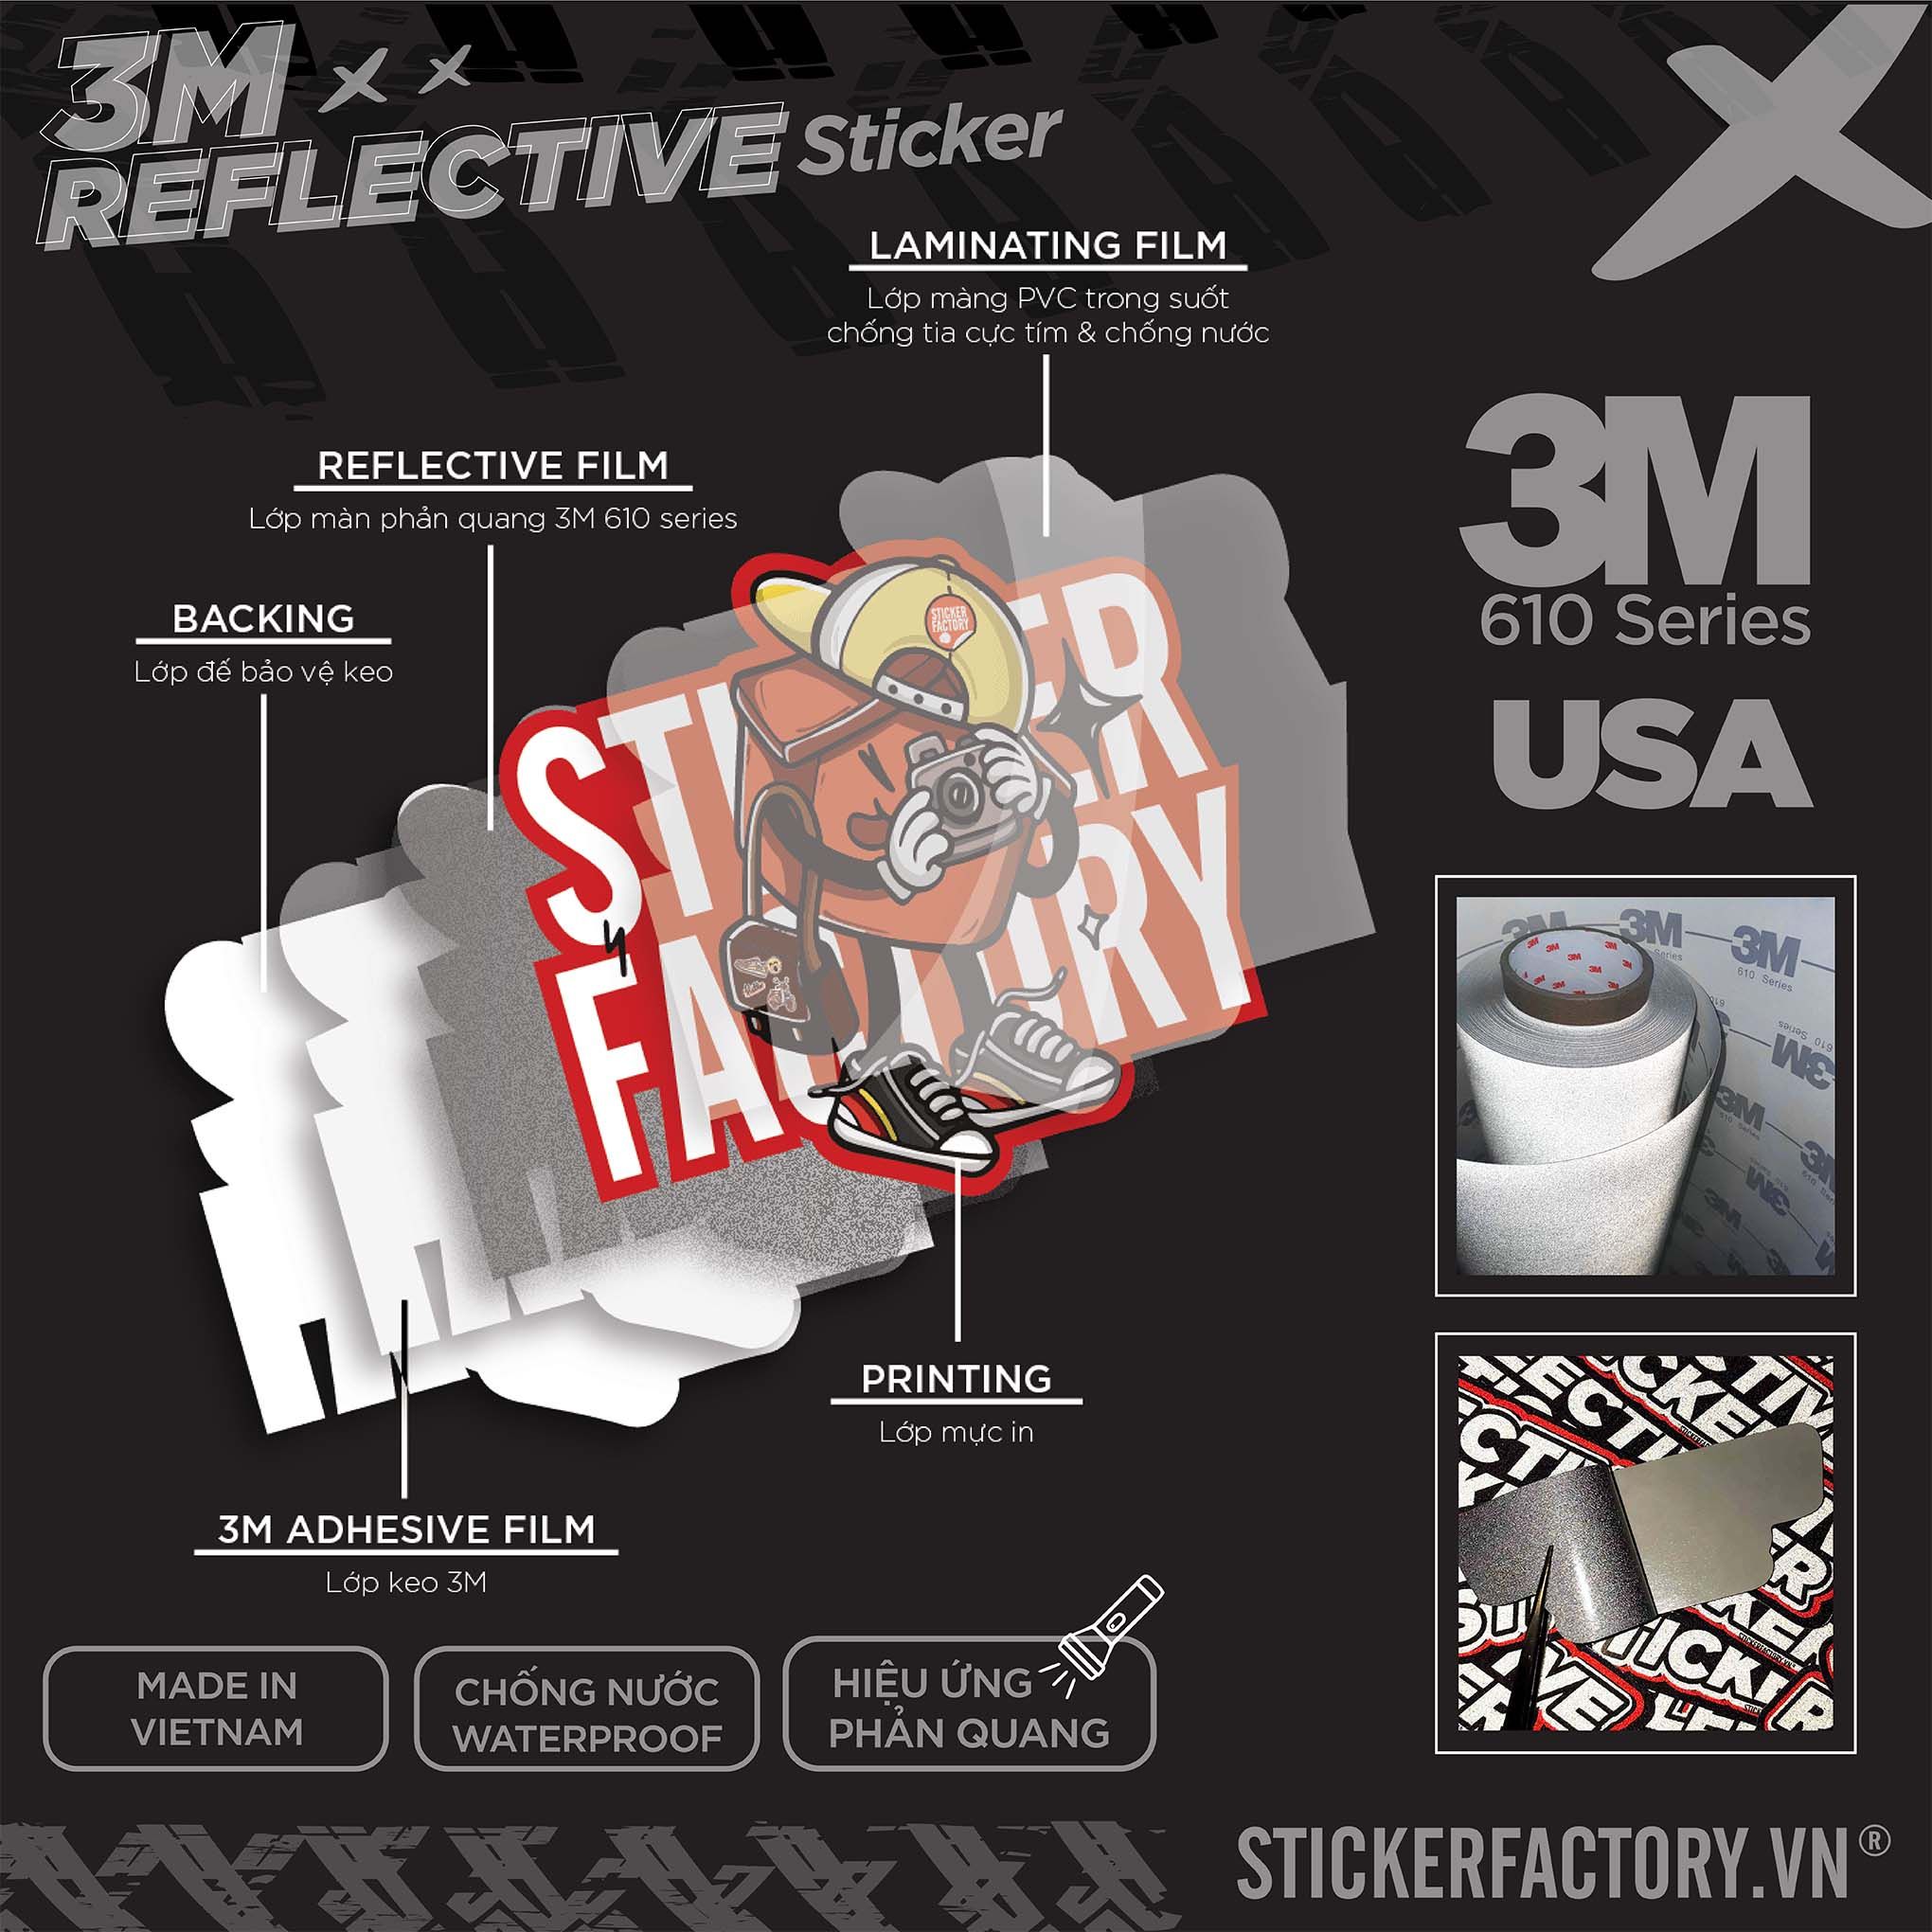 HANOI TYPOGRAPHY 3M - Reflective Sticker Die-cut